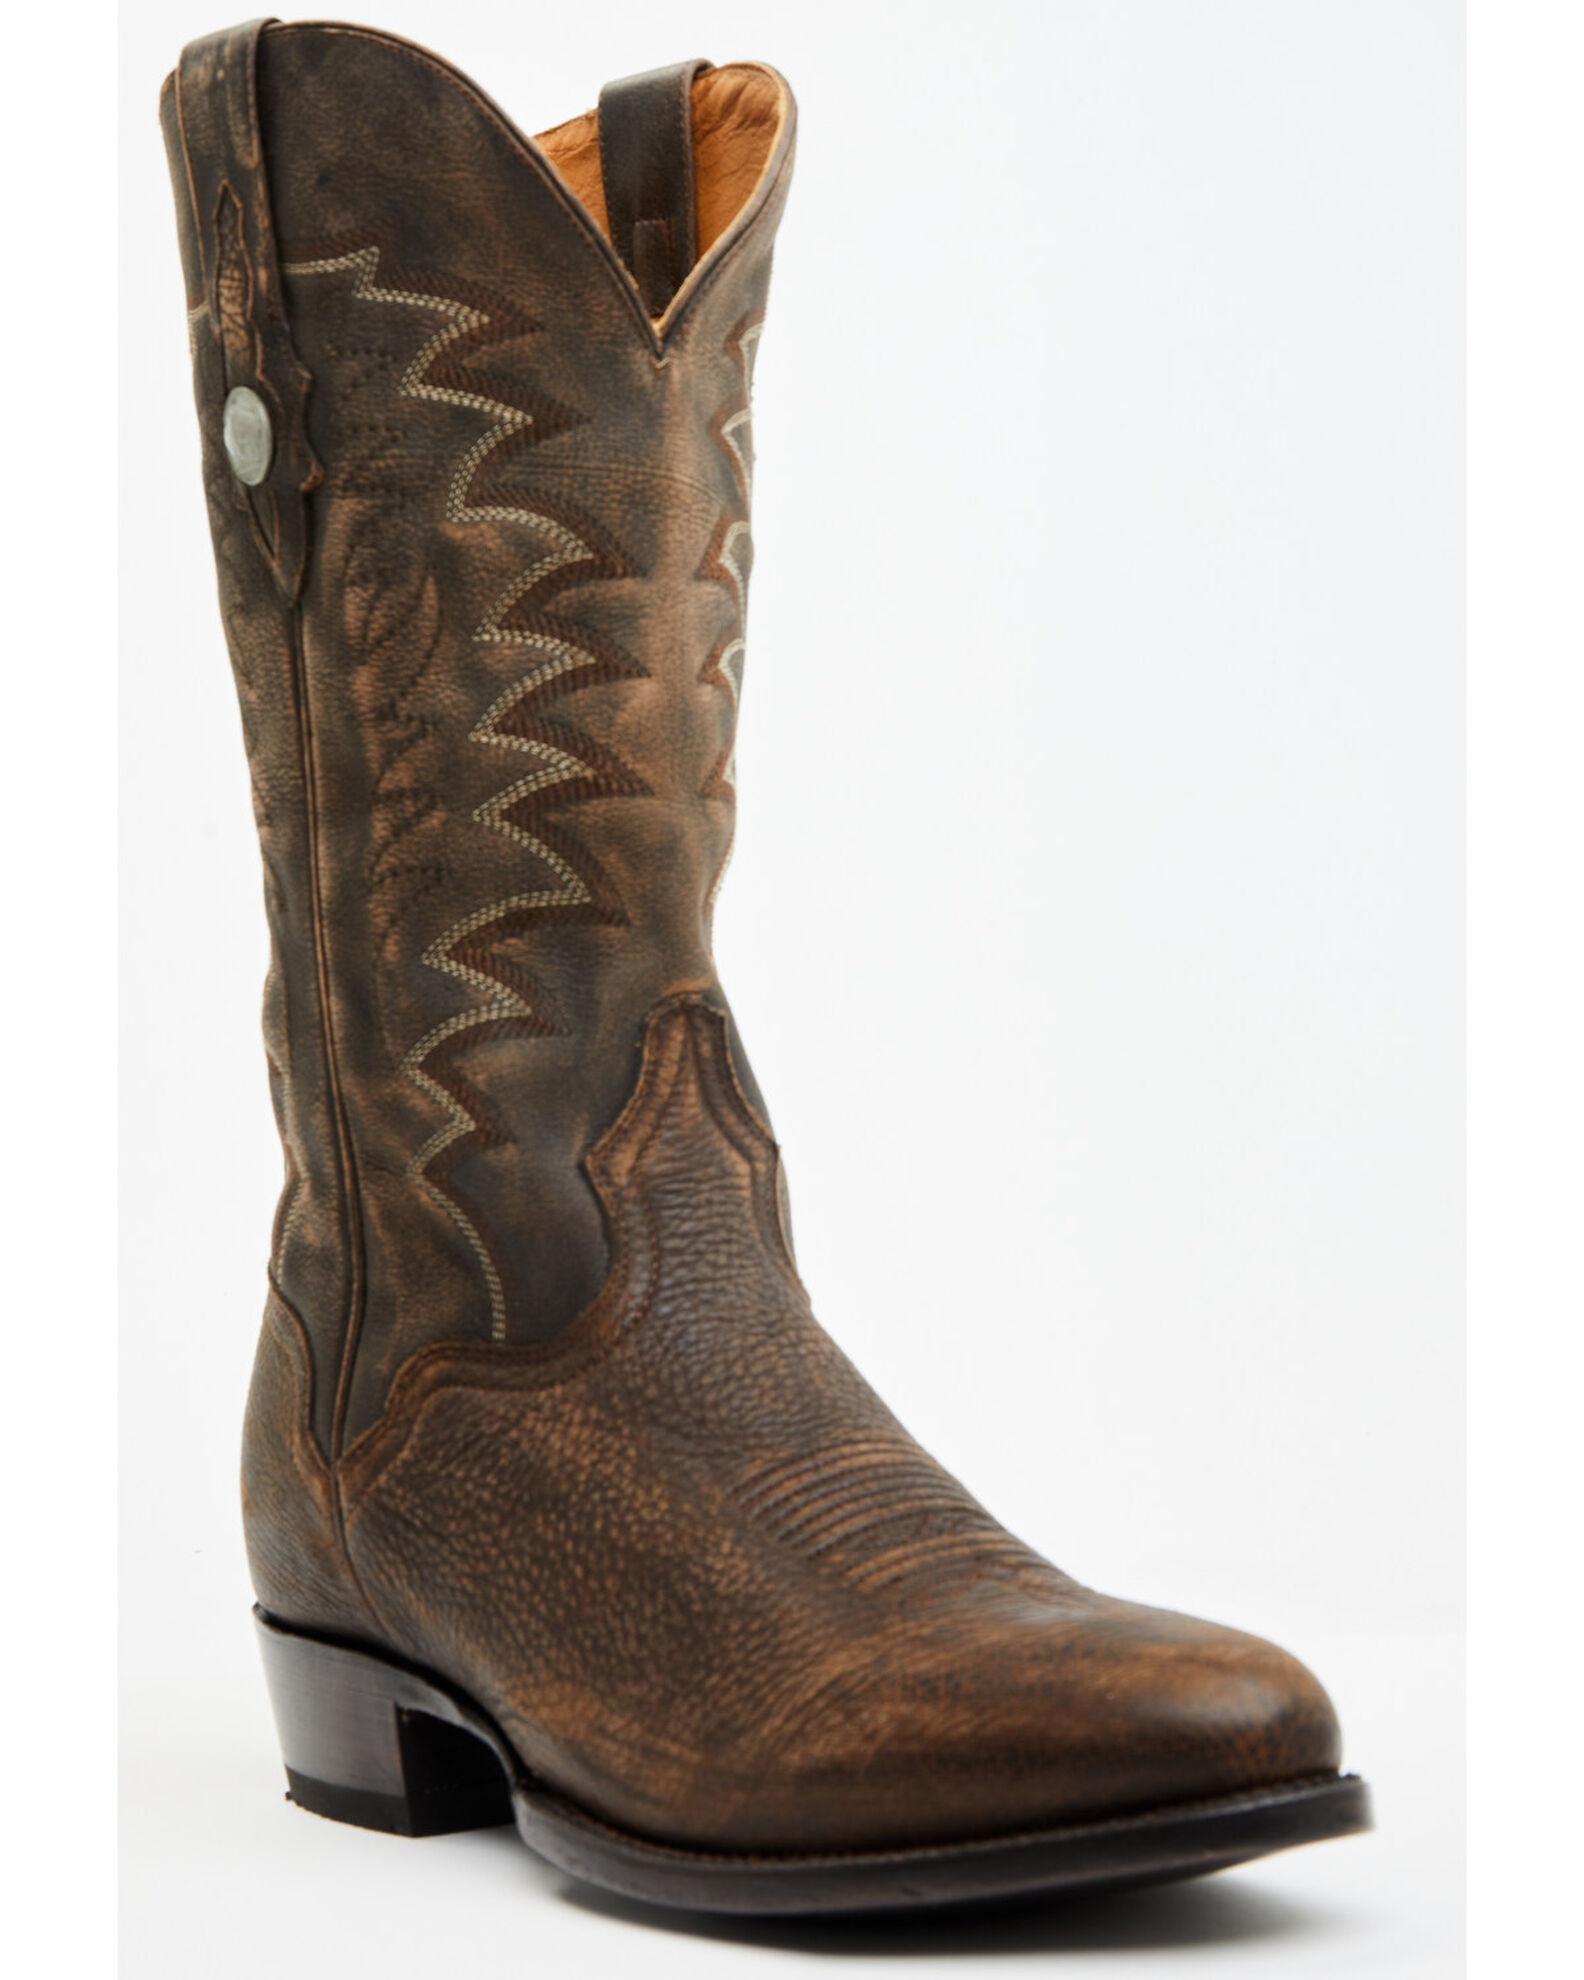 El Dorado Men's Bison Western Boots - Medium Toe